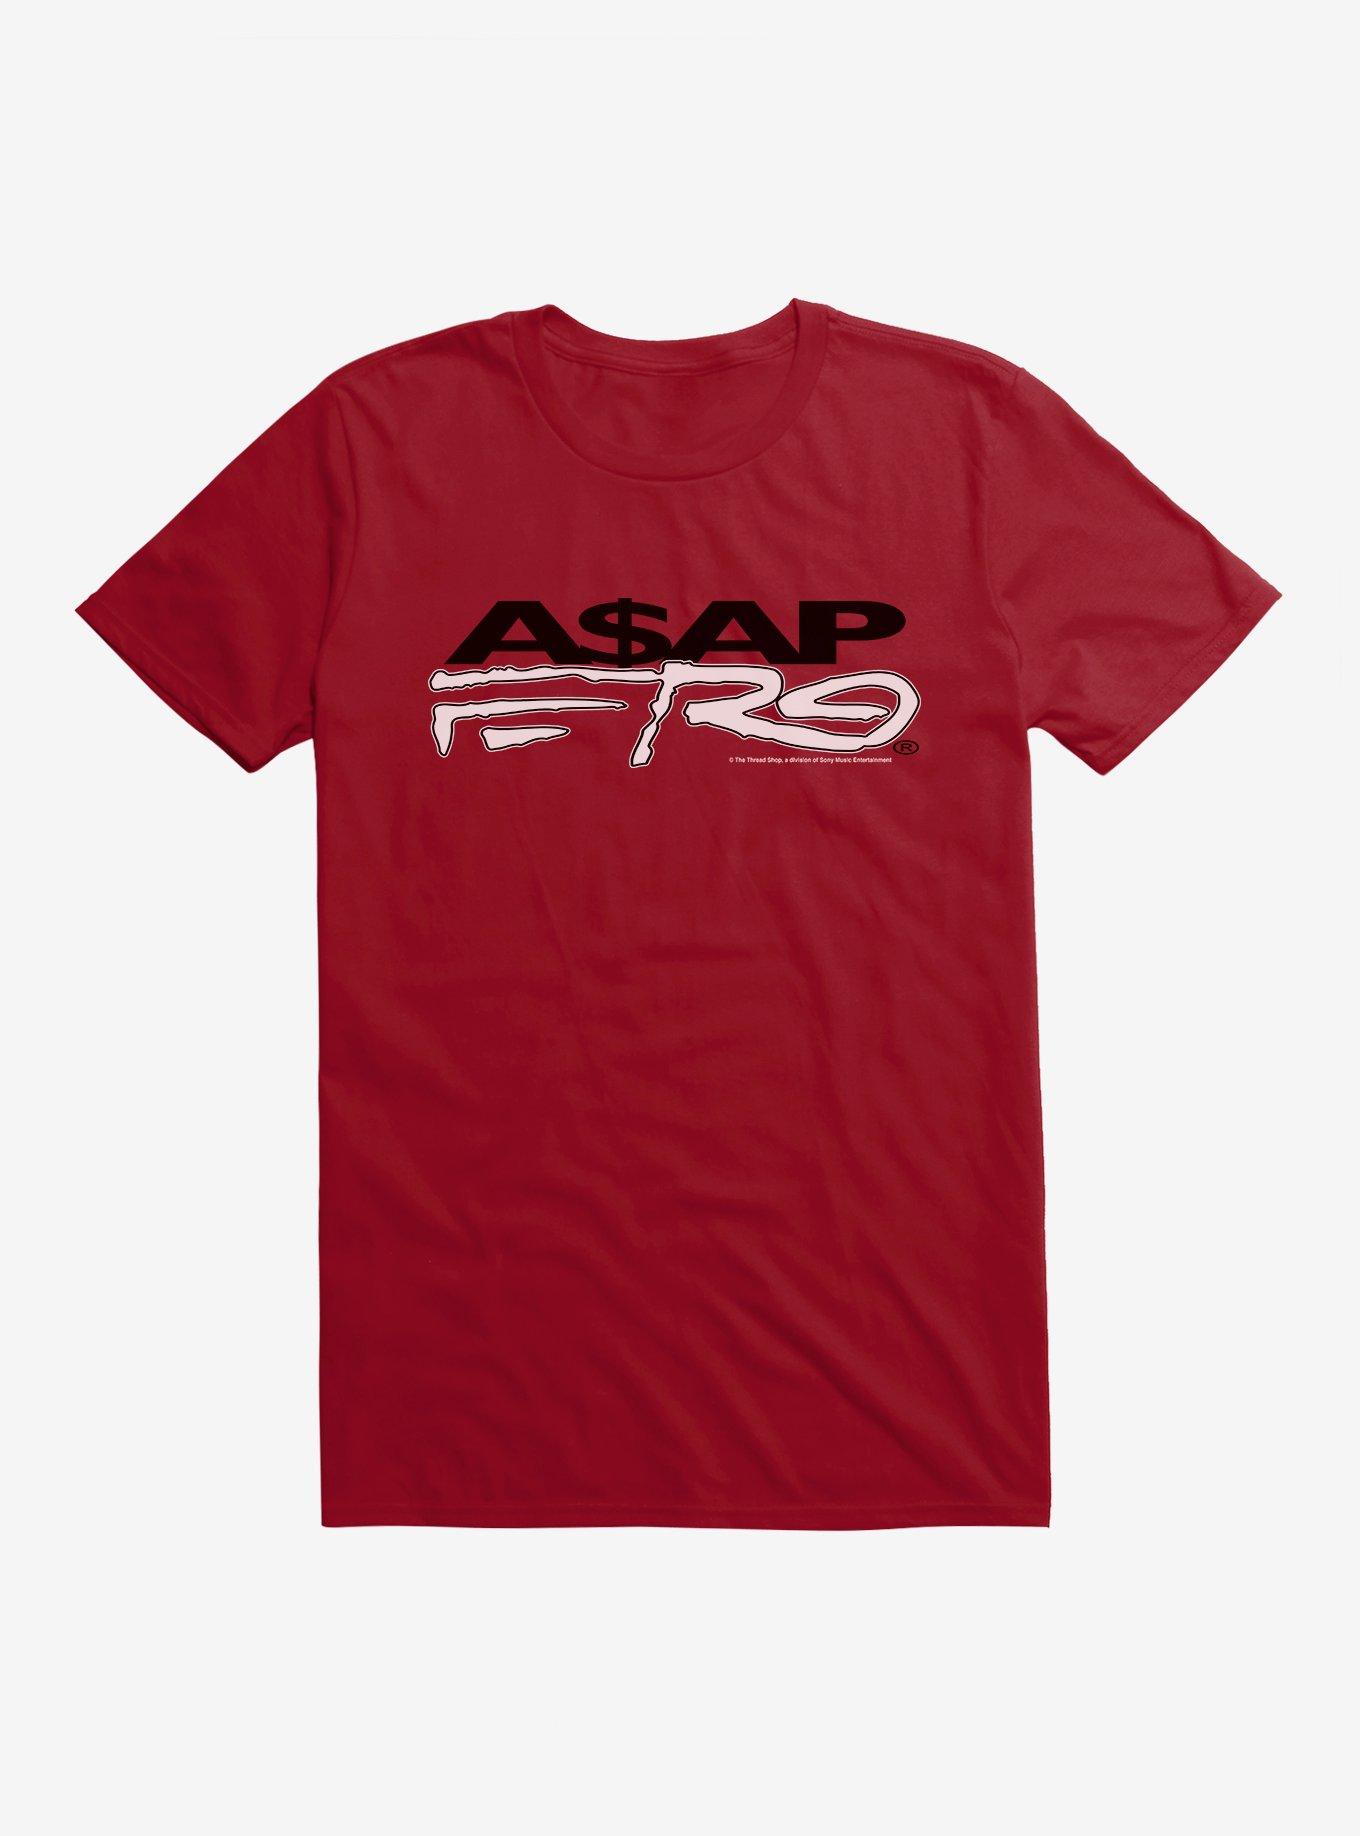 A$AP Ferg Forever Album T-Shirt